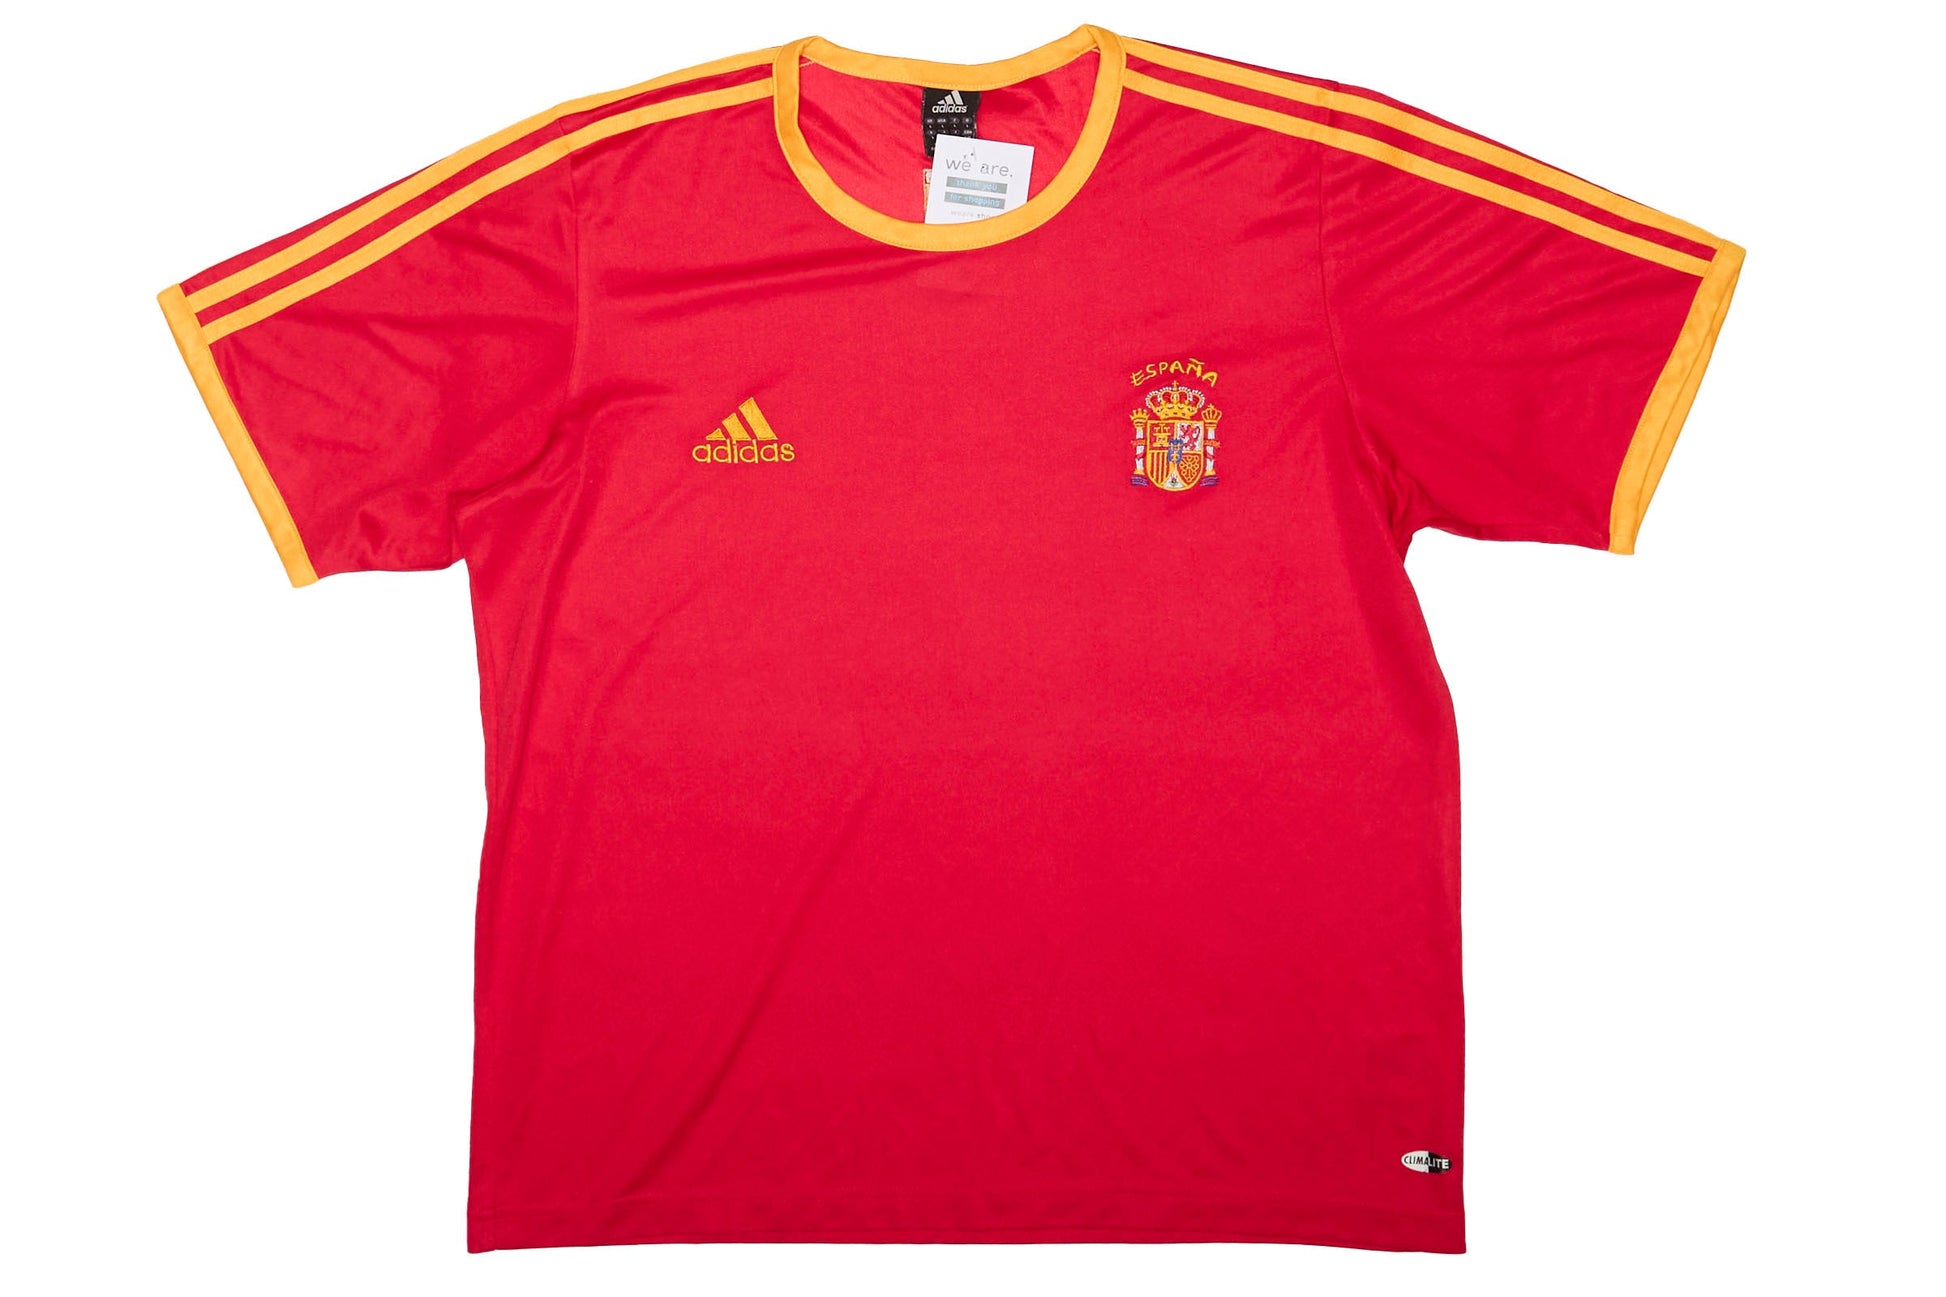 Mens Adidas Espana Football Shirt